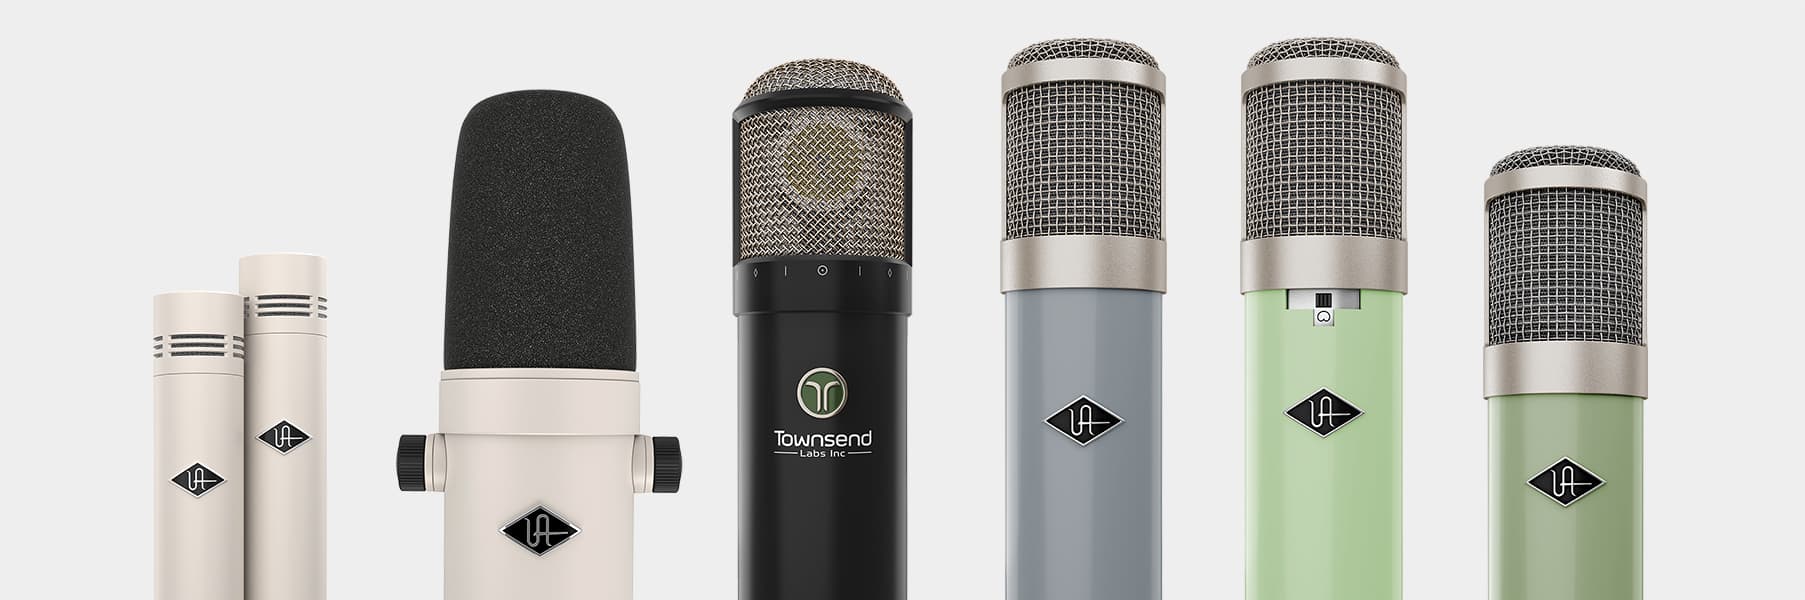 Dos modelos de micrófonos ideales para tu para podcast